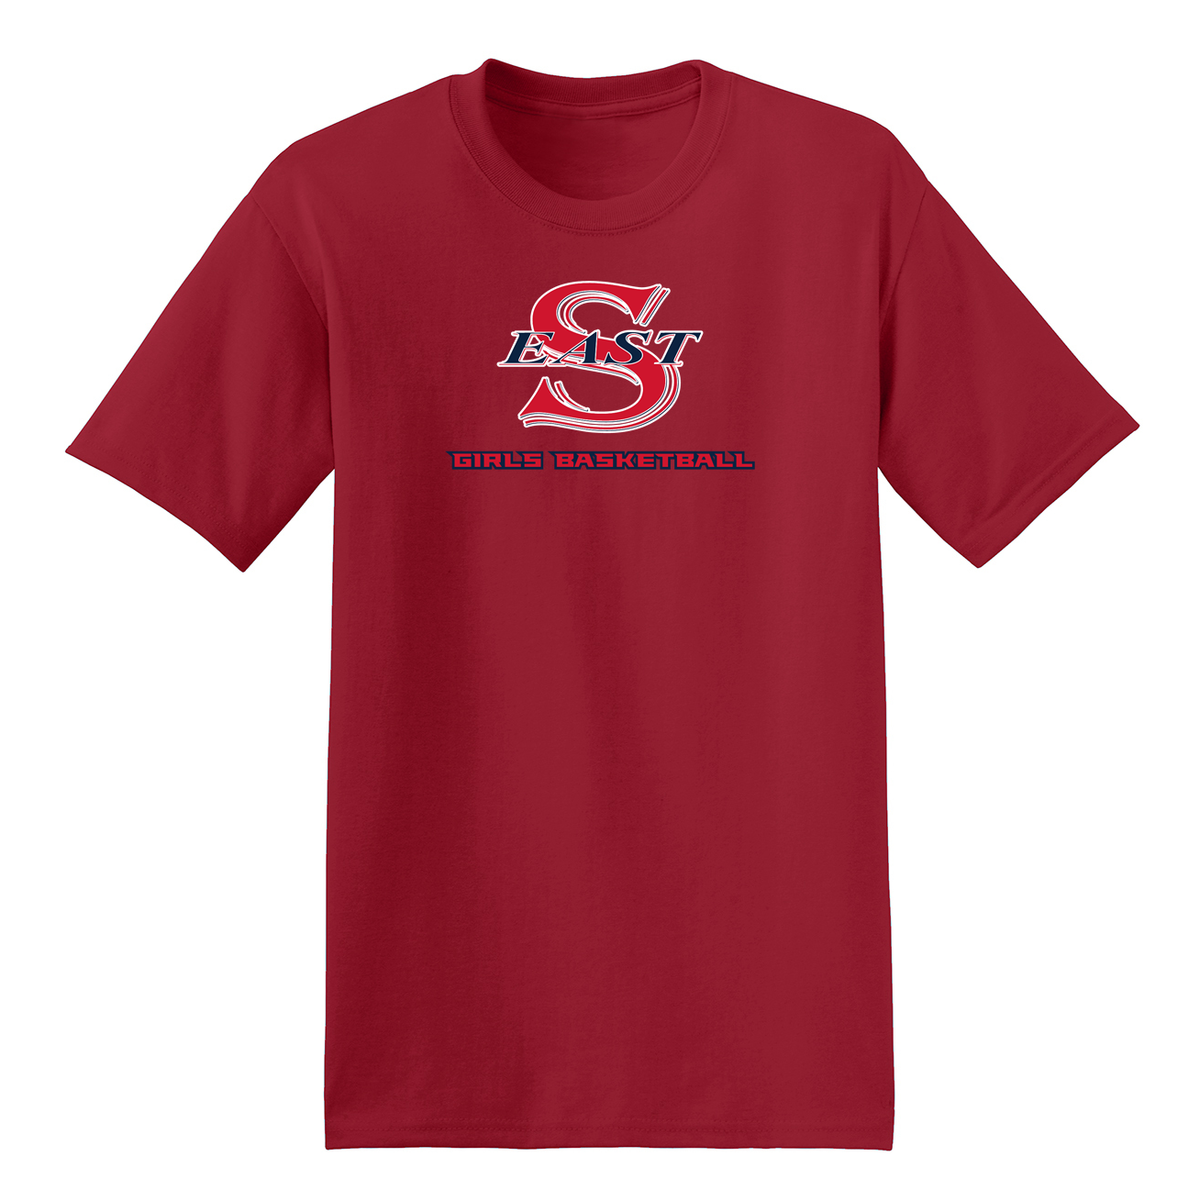 Smithtown East Girls Basketball T-Shirt